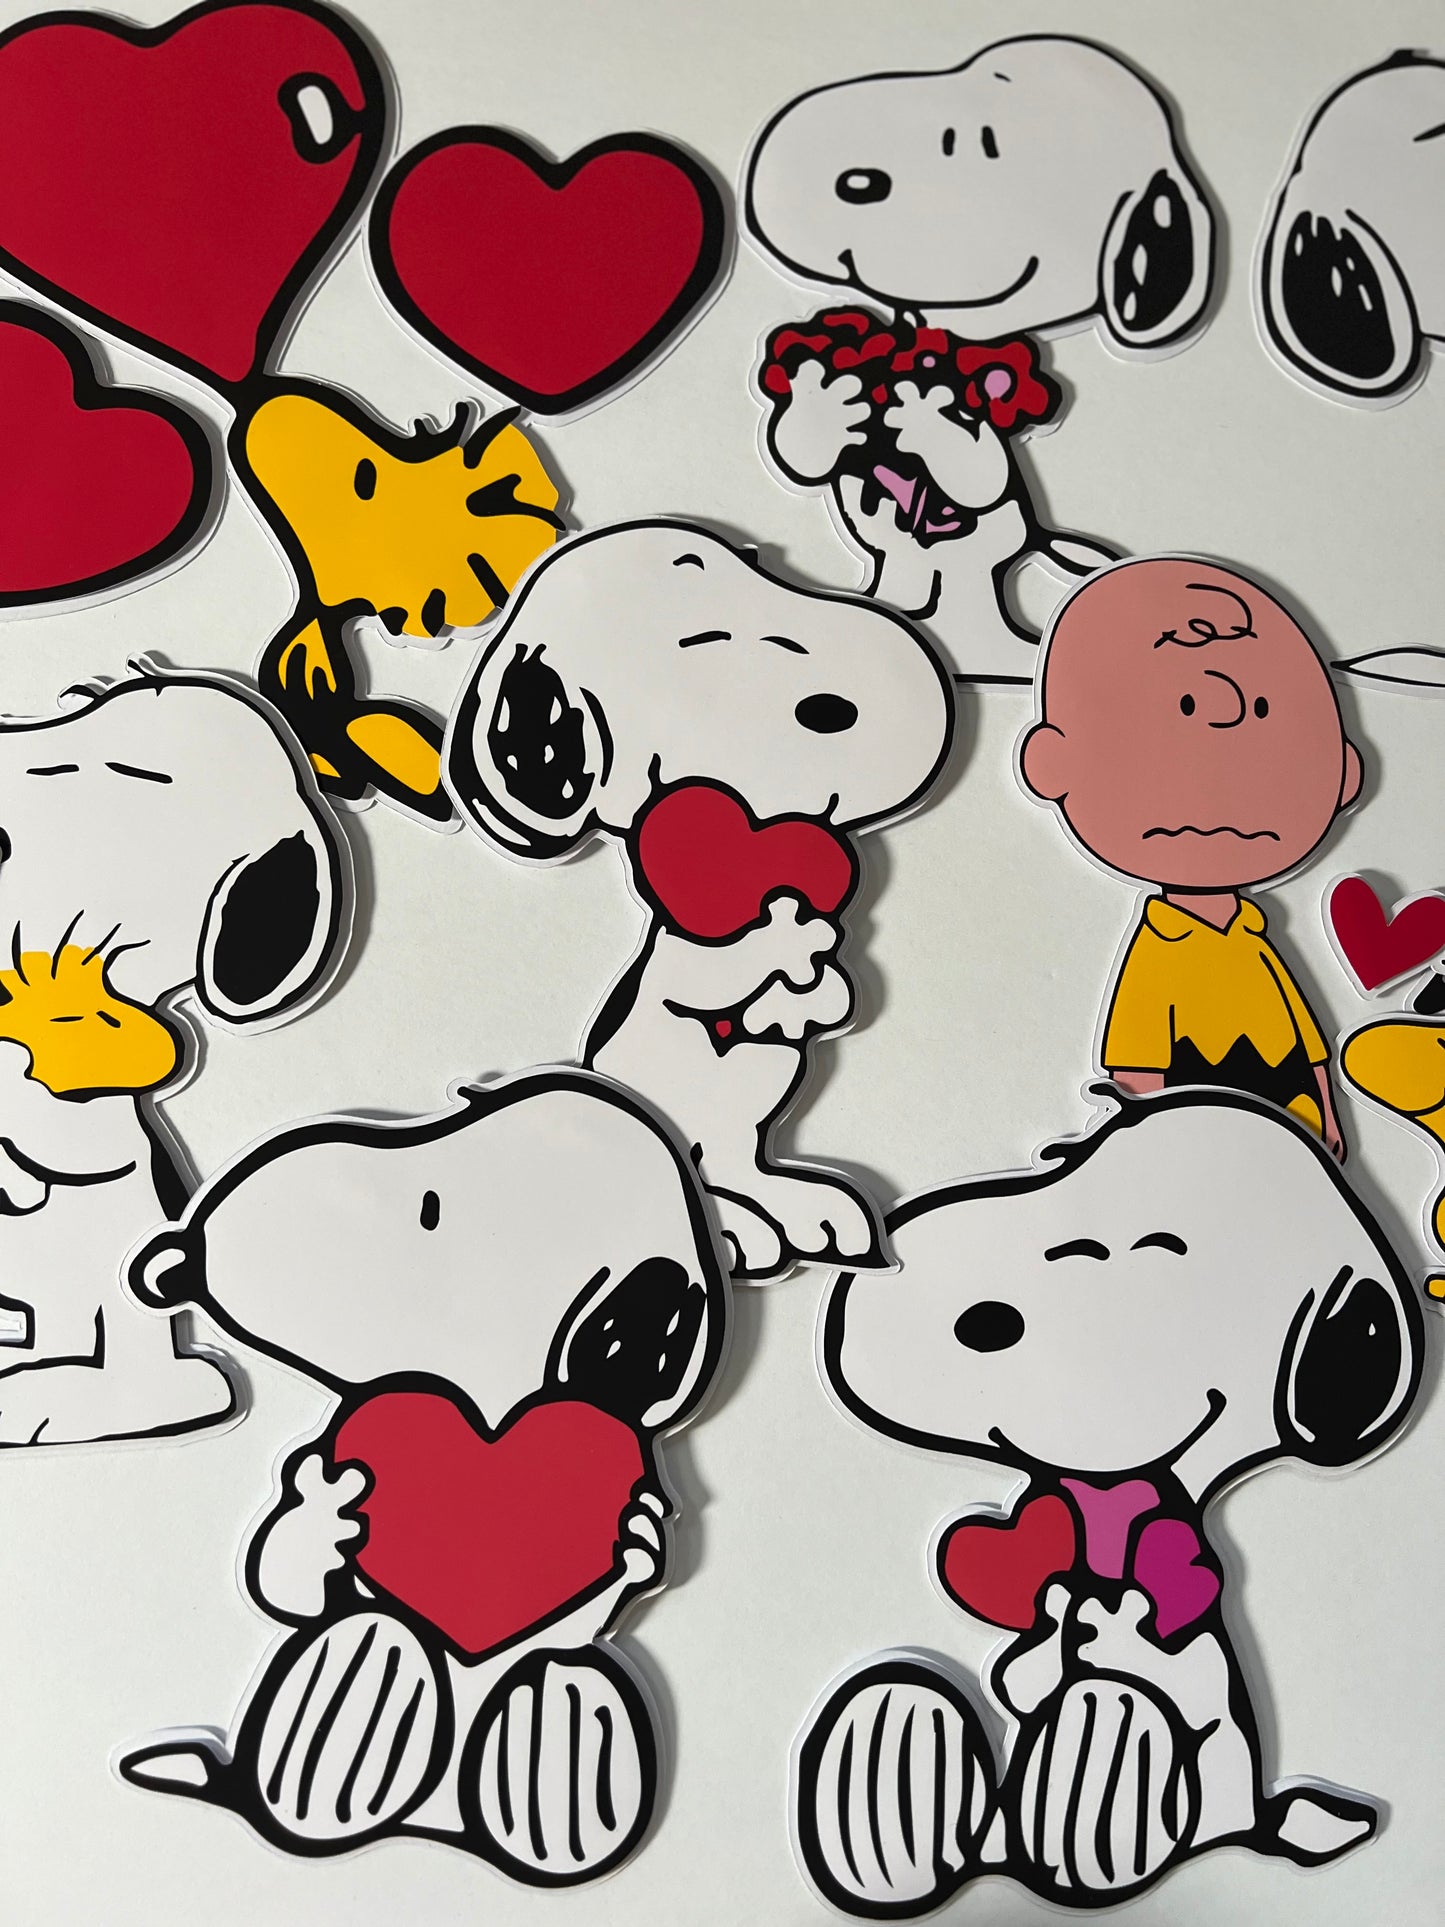 Snoopy cutouts